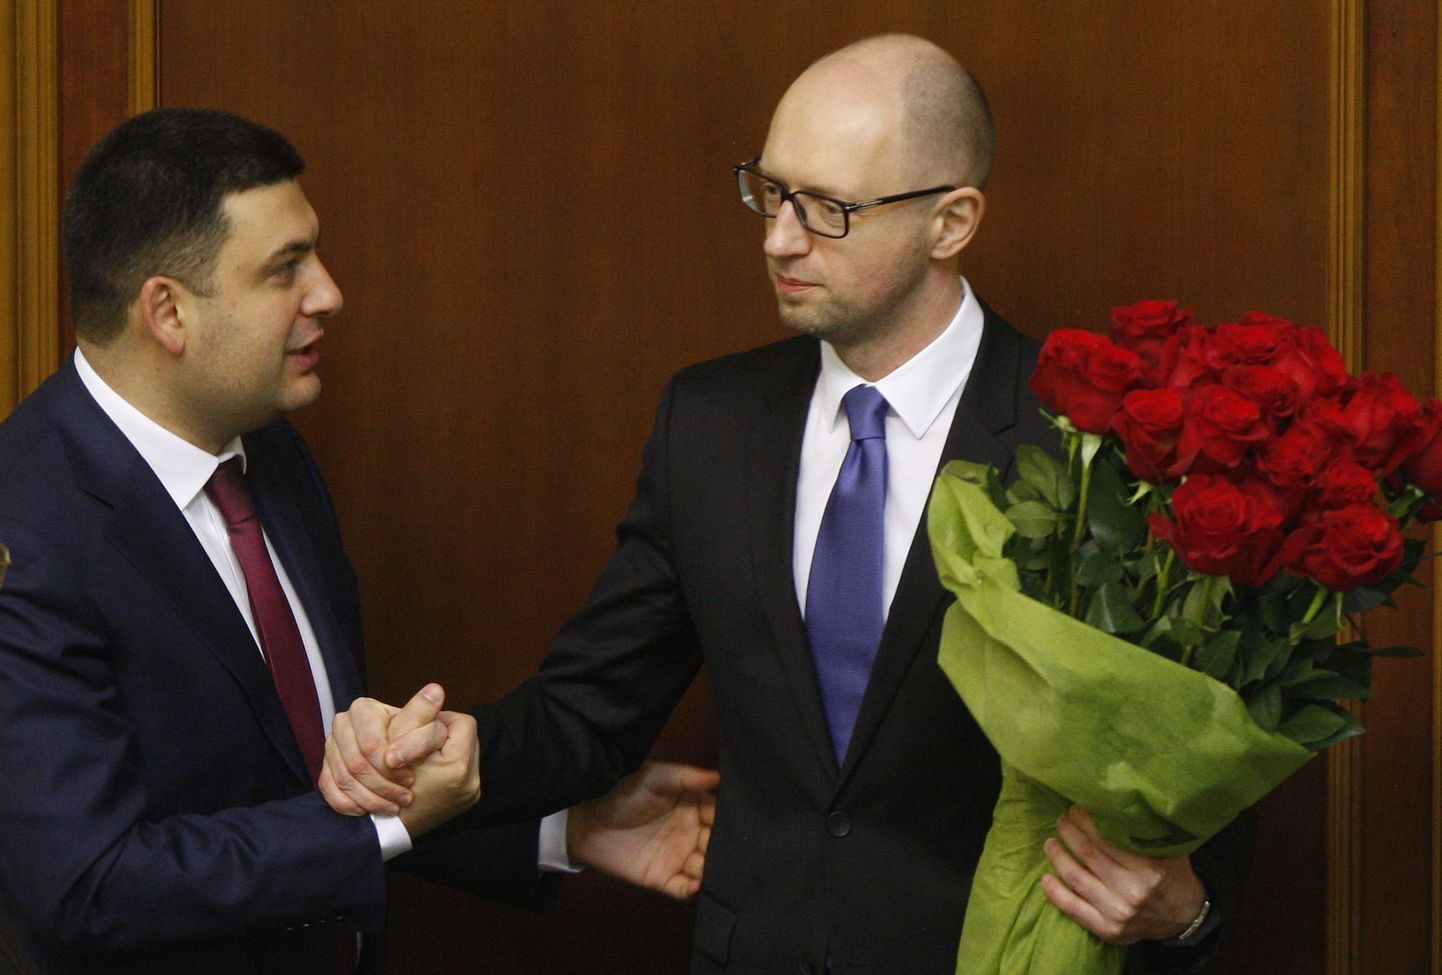 Ukraina praegune parlamendispiiker Volodõmõr Groisman (vasakul) ja ametist lahkuv peaminister Arseni Jatsenjuk 2014. aastal.